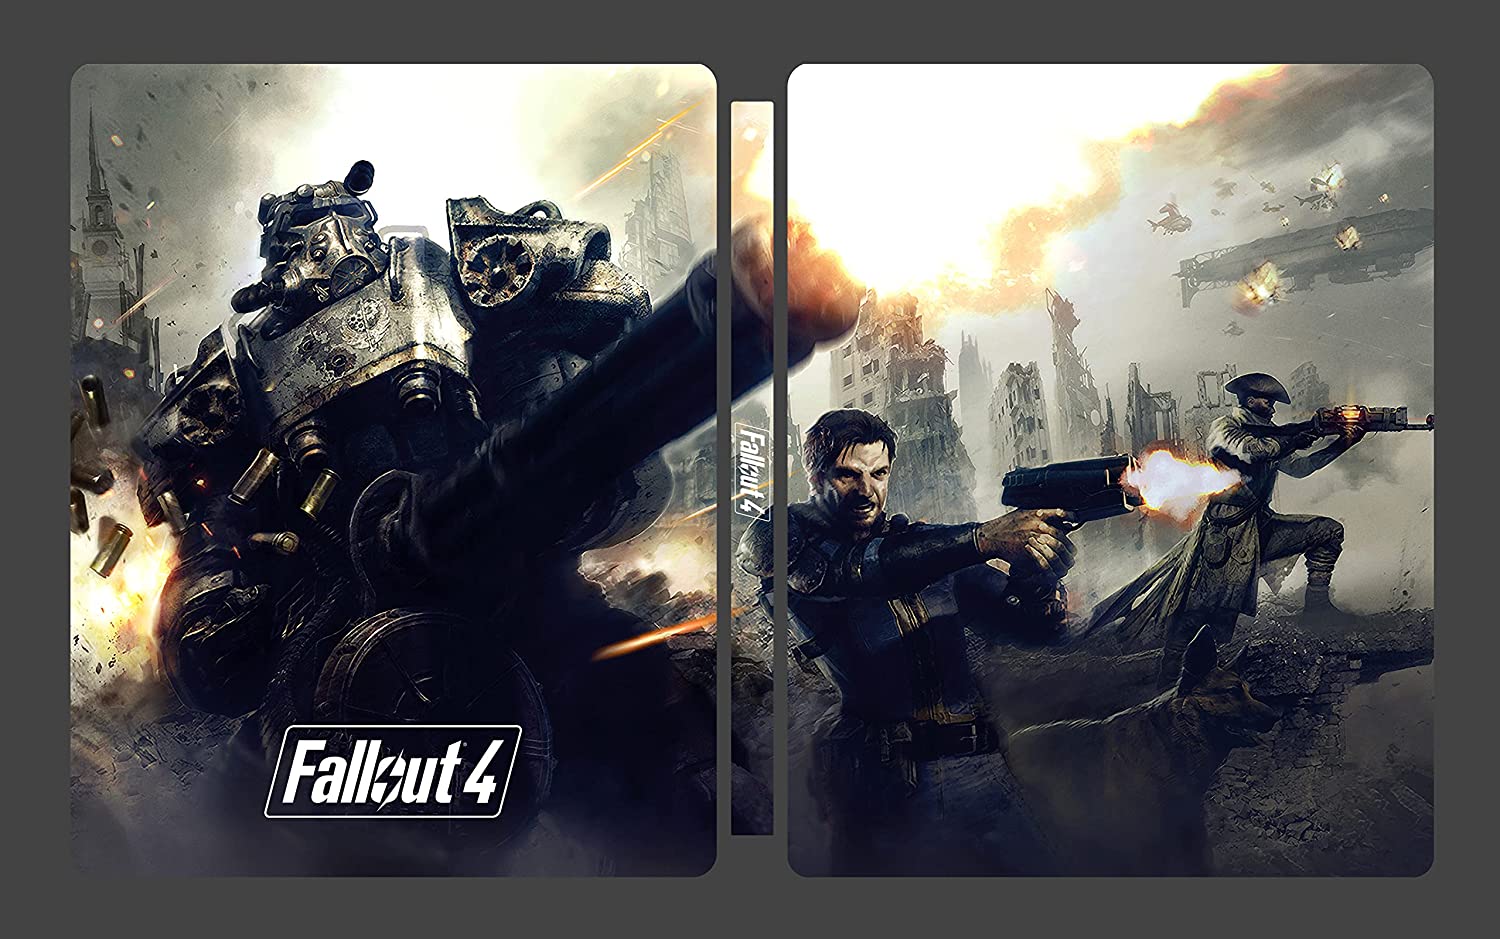 specjalne 4 Kolekcjonerki - Edition wydanie W GOTY zadebiutuje Steelbook Fallout październiku